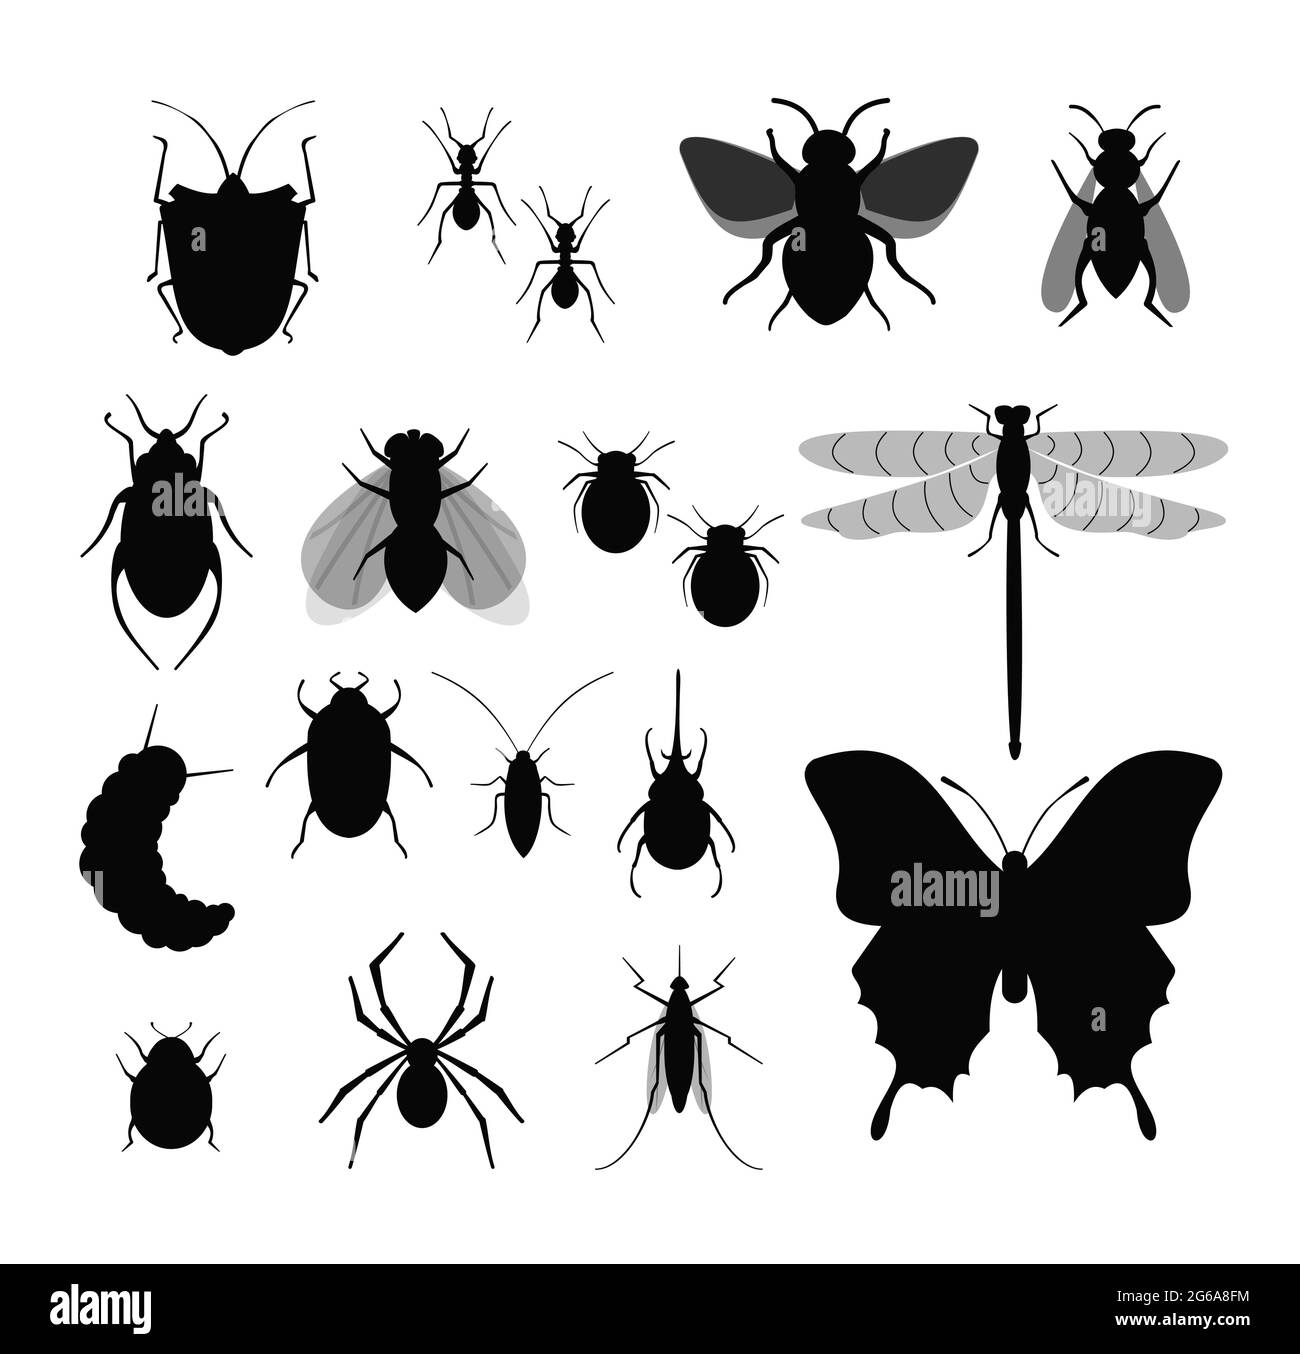 Illustrazione vettoriale insieme di insetti, raccolta di differenti silhouette di insetti, mosca, ape, zecche e bug, ragno su sfondo bianco. Illustrazione Vettoriale